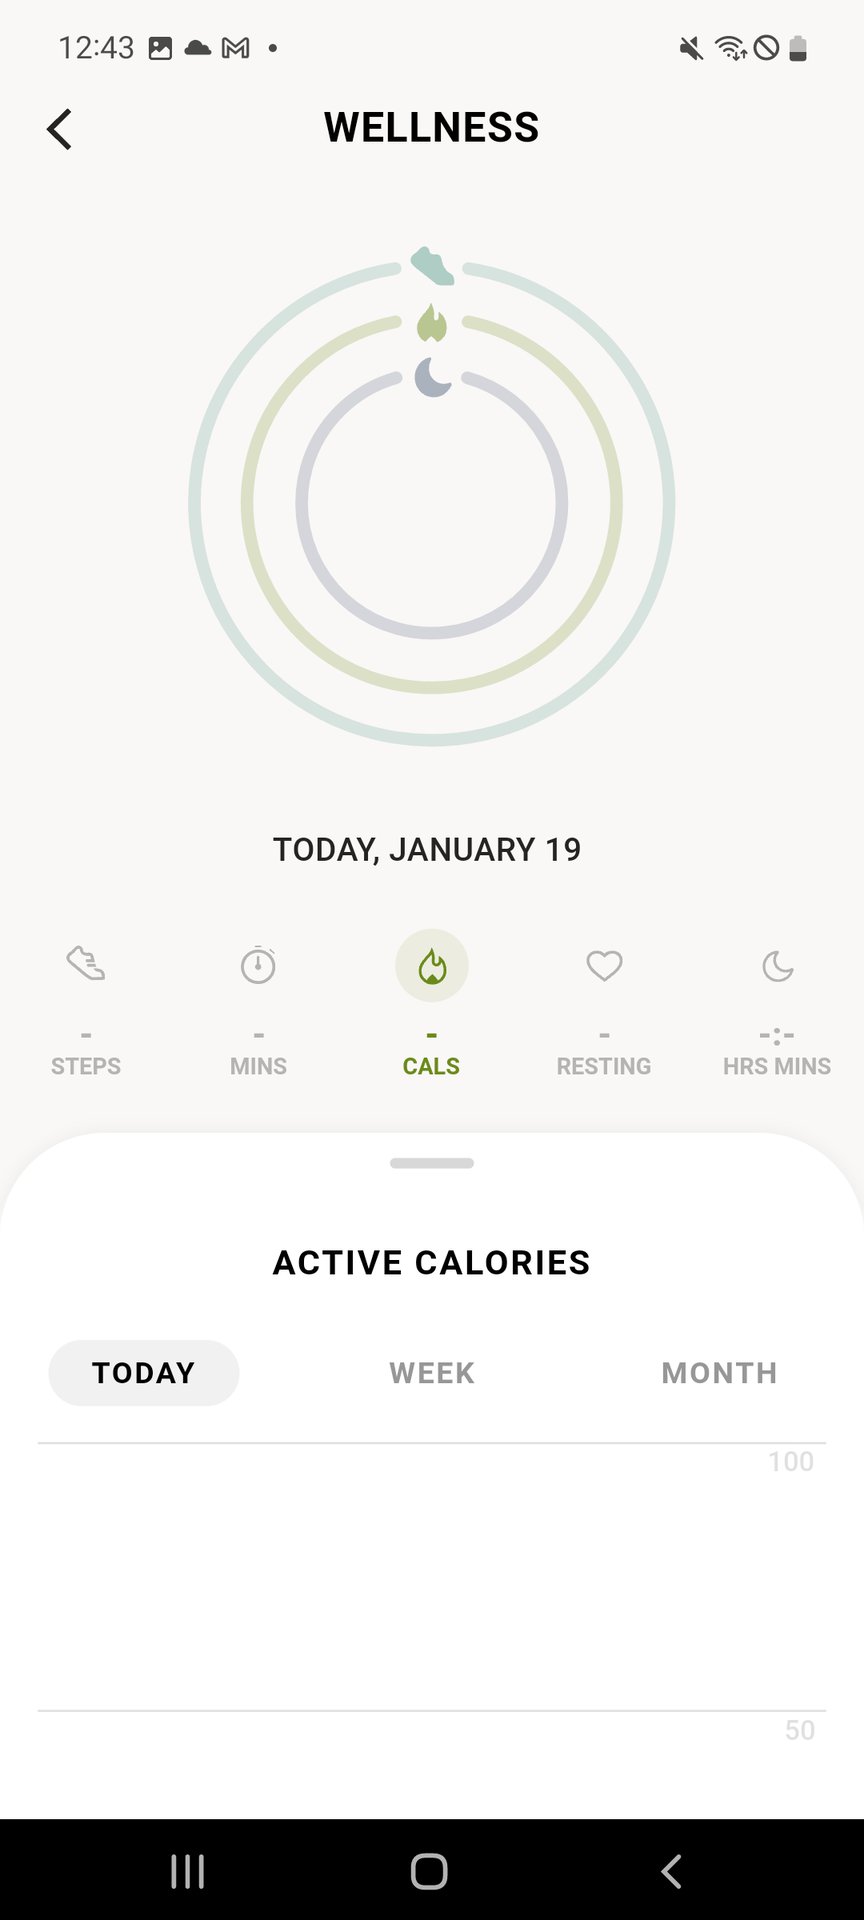 SKAGEN Falster Smartwatch App Wellness